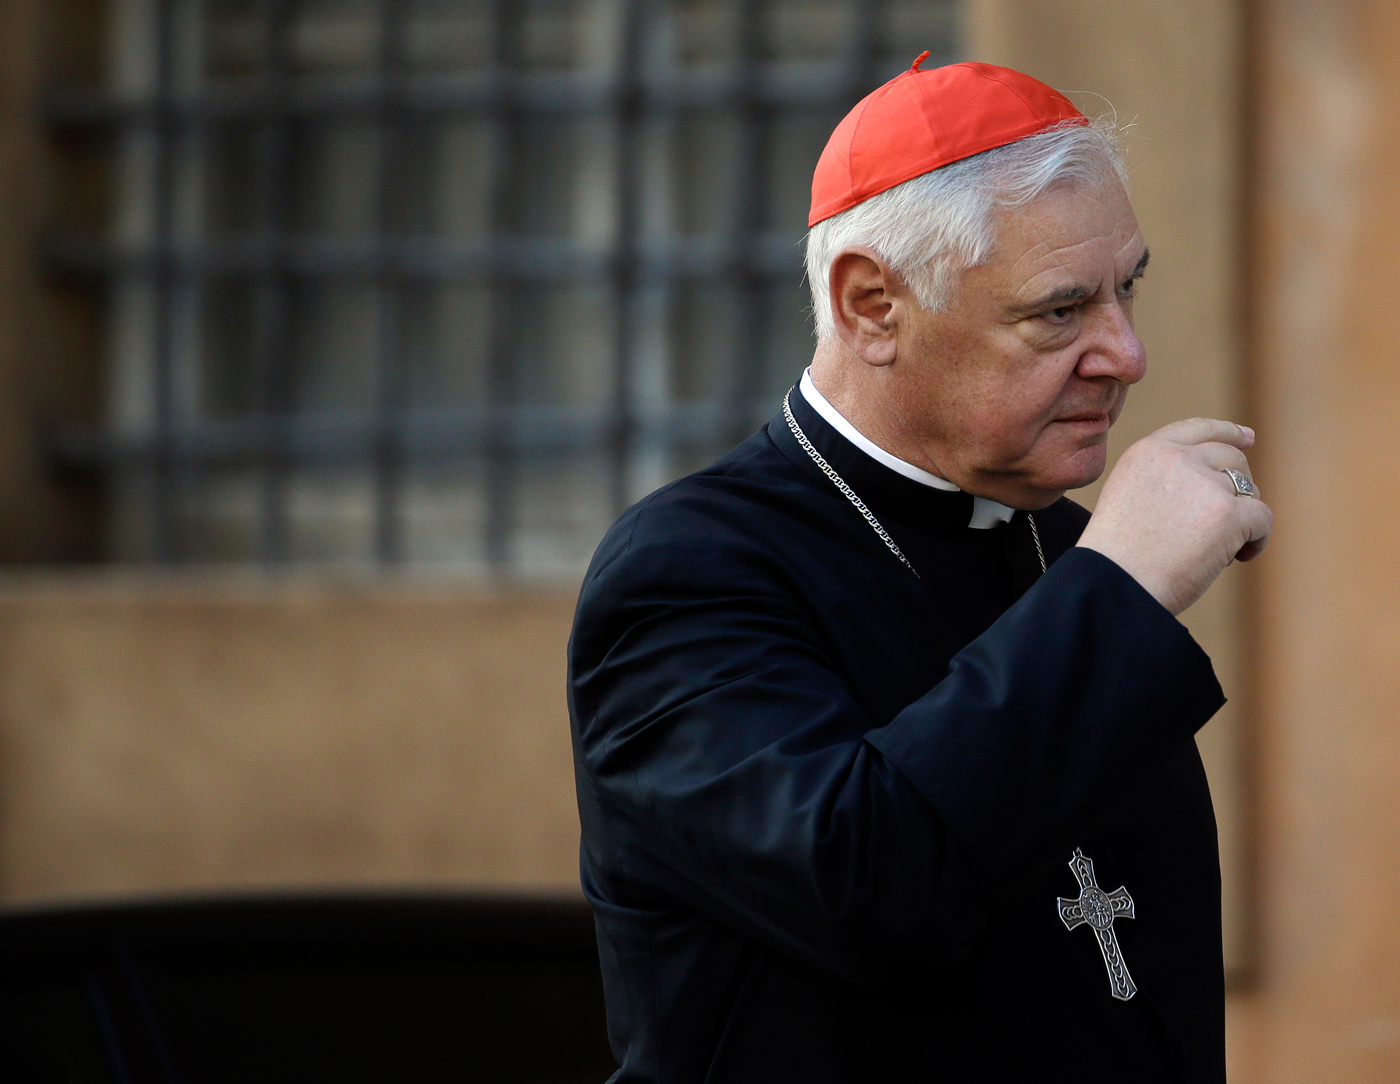 El cardenal Gerhard Müller pide que se haga justicia para acusados de  abusos a menores | Internacional | Noticias | El Universo